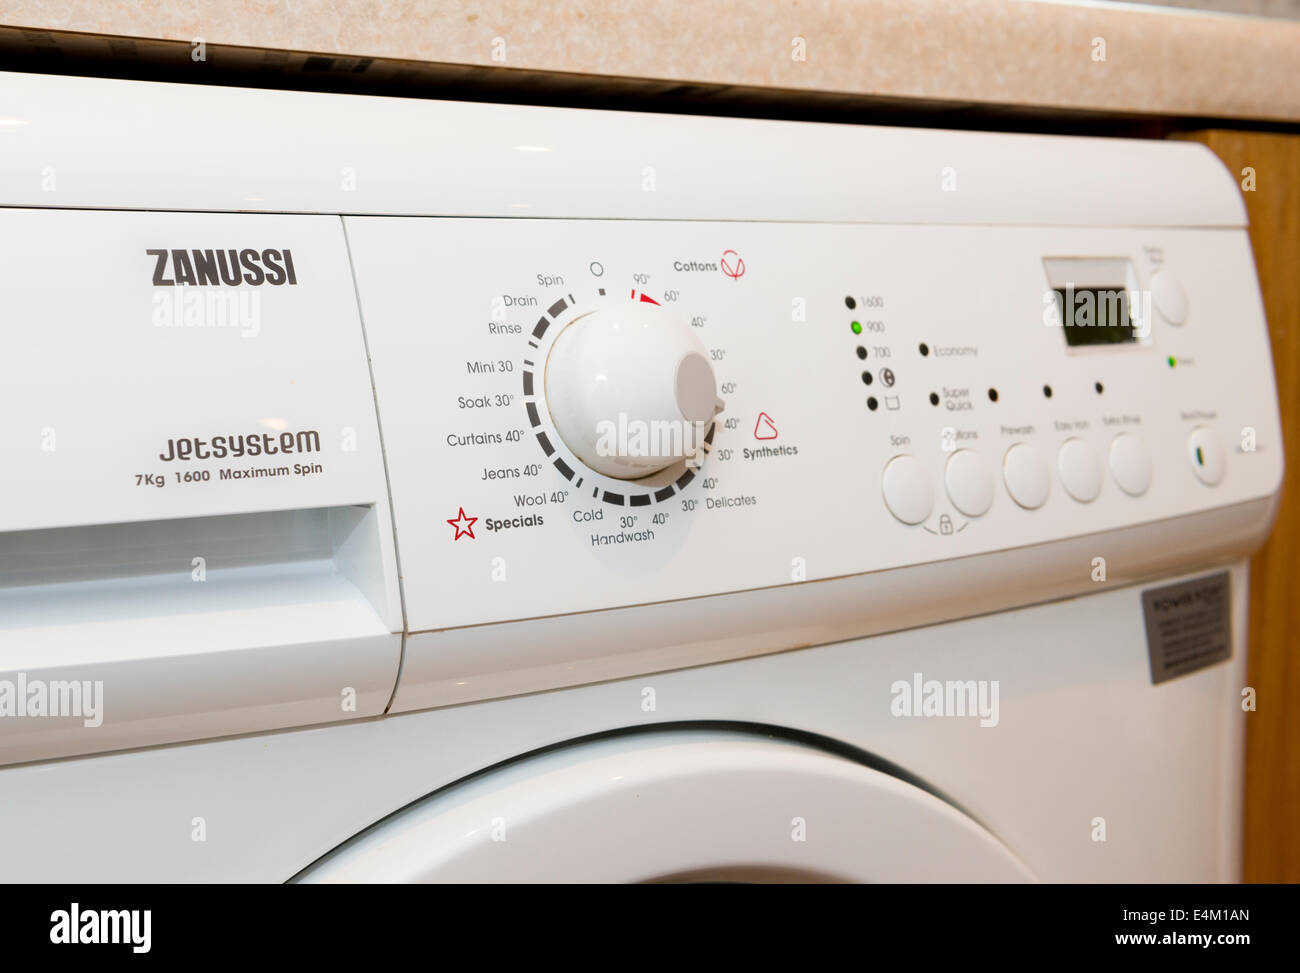 Ein Zanussi Waschmaschine Control panel Stockfotografie - Alamy